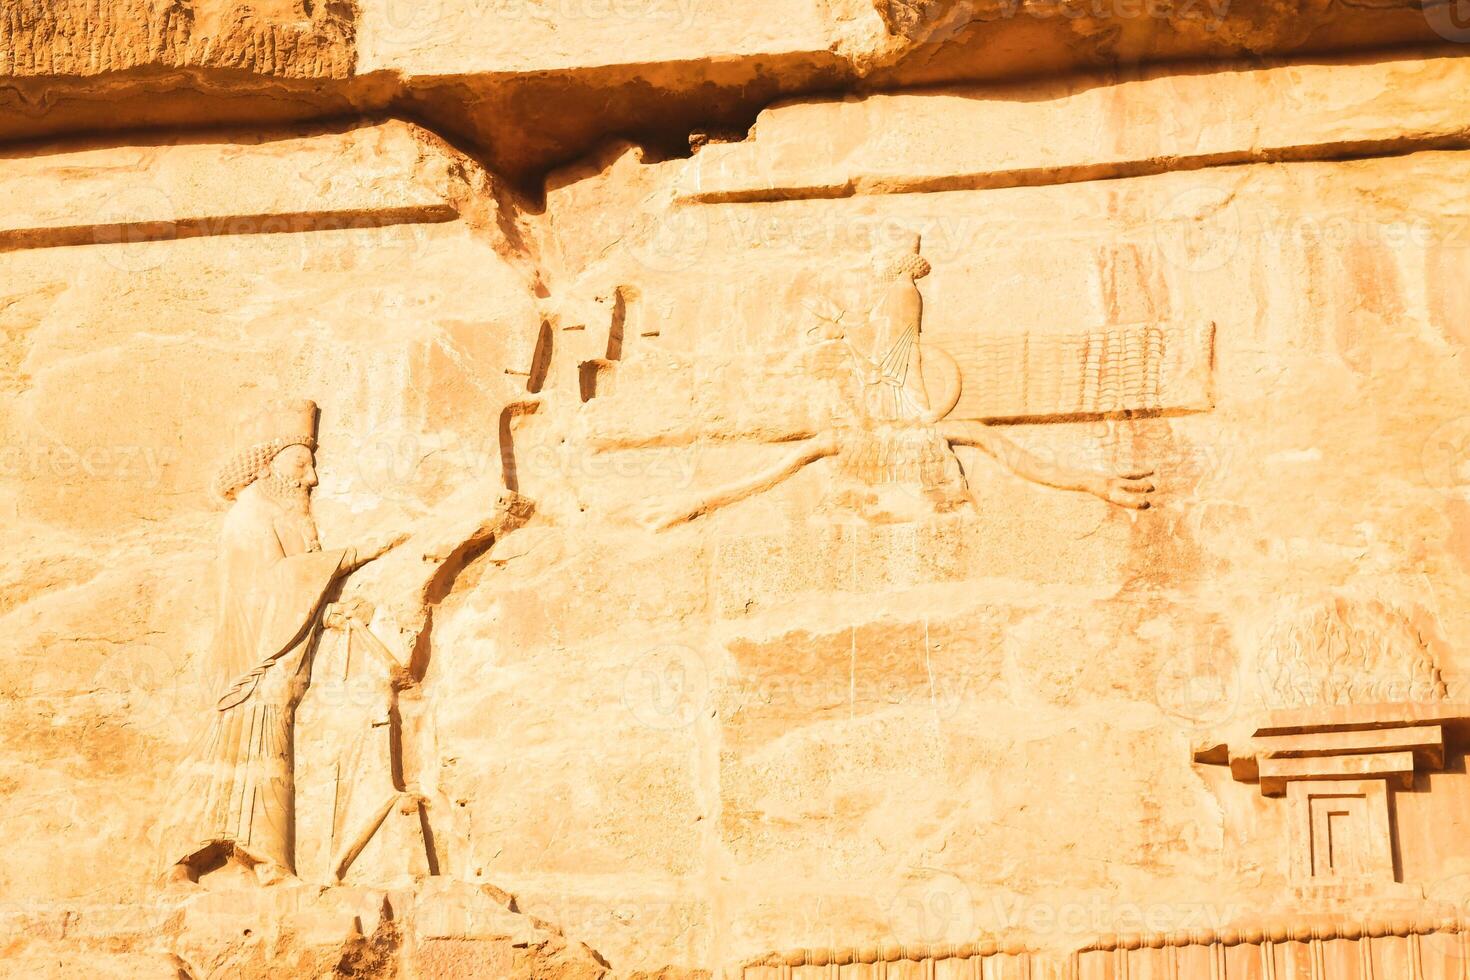 persépolis, corrí - 8vo junio, 2022 - cerca arriba tallado rocas en Persépolis arqueológico sitio. persa ciudad permanece y historia concepto foto